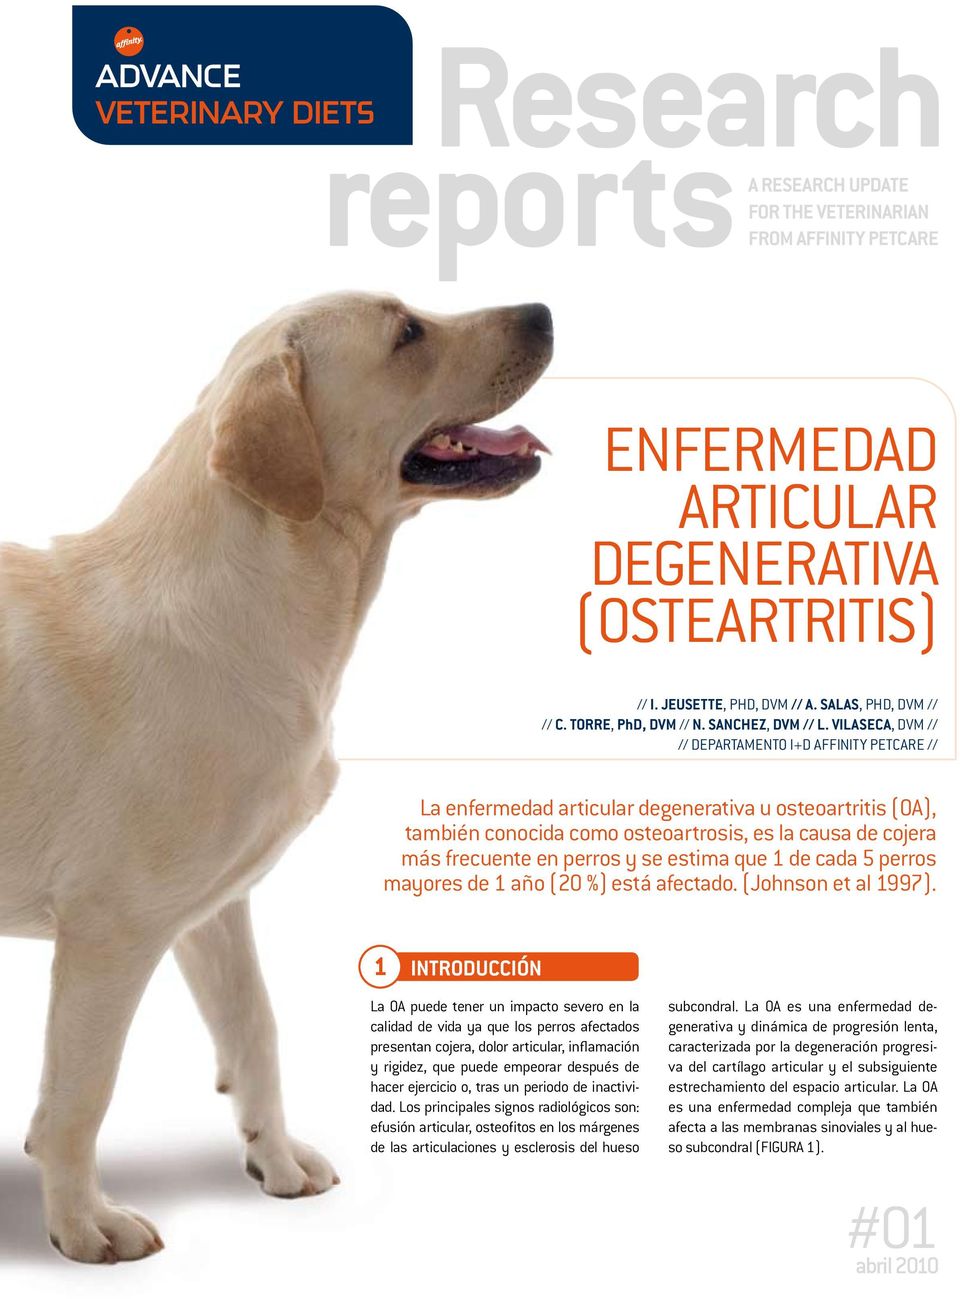 VILASECA, DVM // // Departamento I+D Affinity Petcare // La enfermedad articular degenerativa u osteoartritis (OA), también conocida como osteoartrosis, es la causa de cojera más frecuente en perros